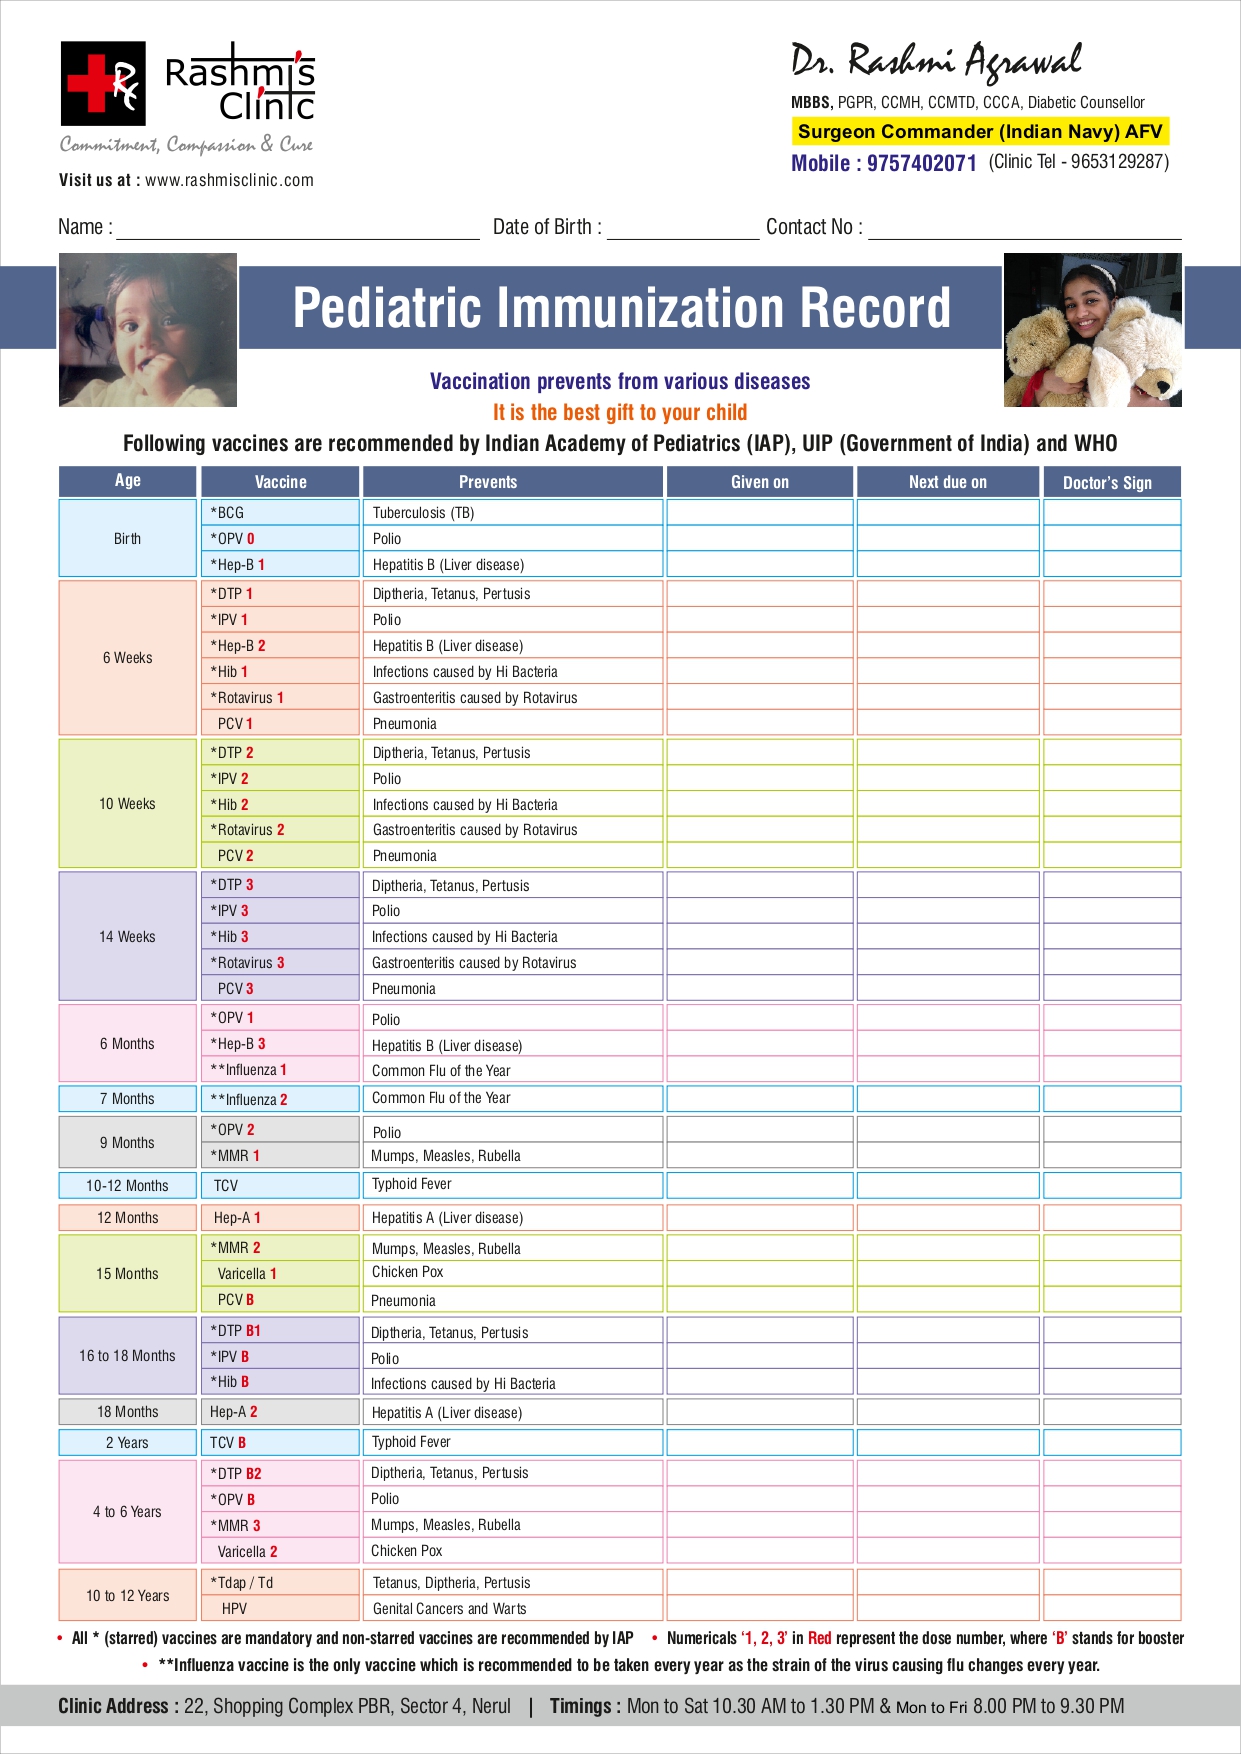 Rashmi Clinic Vaccination